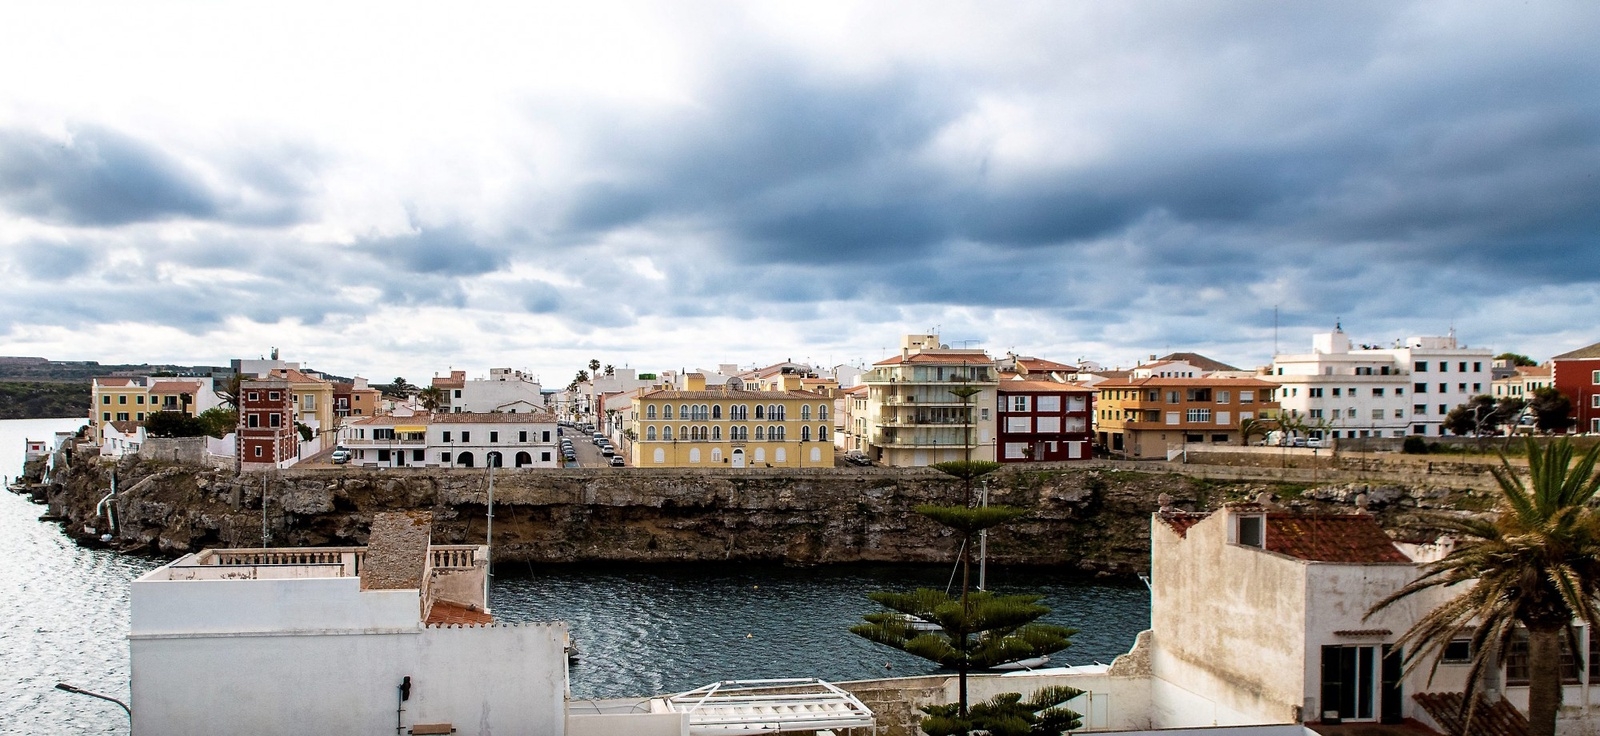 Huvudorten på Menorca heter Mahon, Maó på katalanska, och har en stor vacker hamn.